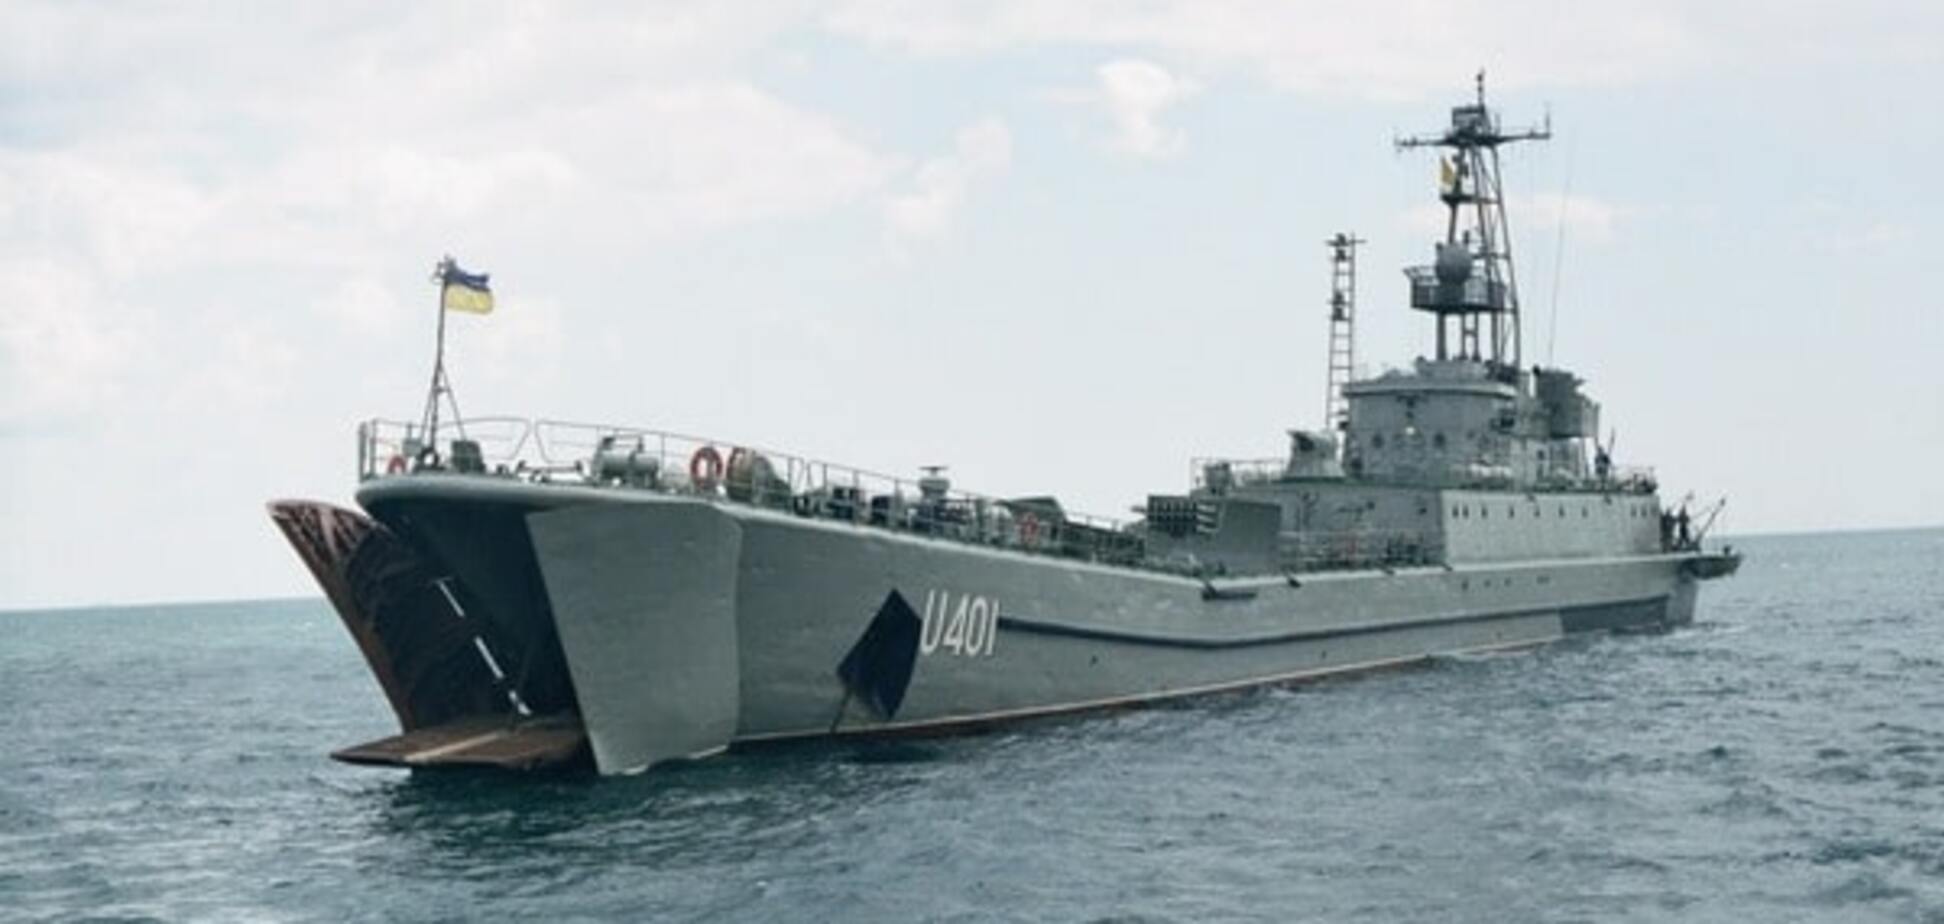 На Сирию! Россияне хотят использовать украденный у Украины корабль - СМИ